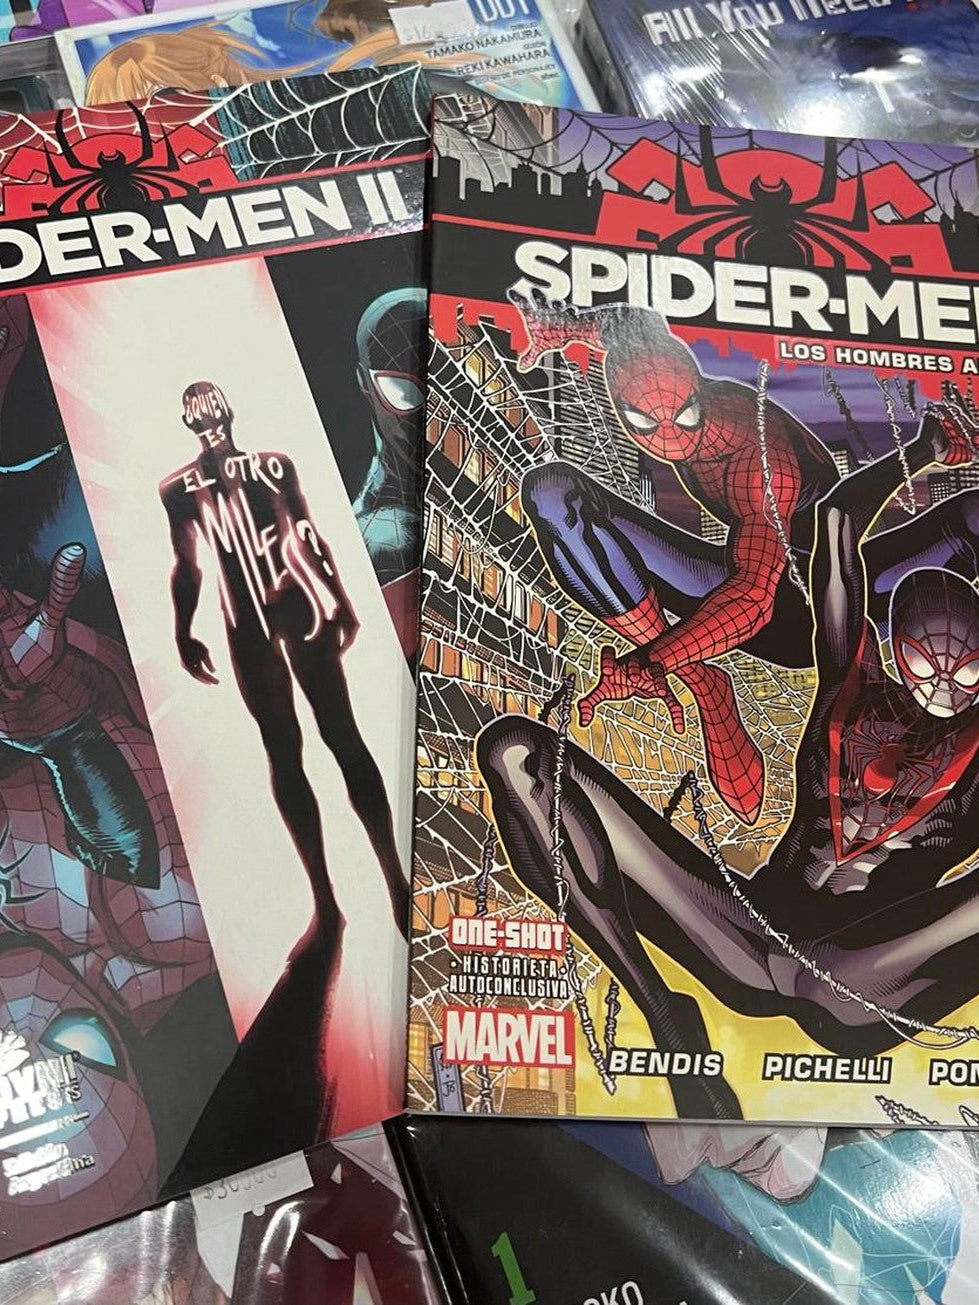 Spider-Men: Los Hombres Araña Completa (2 volúmenes) OVNI Press ENcuadrocomics